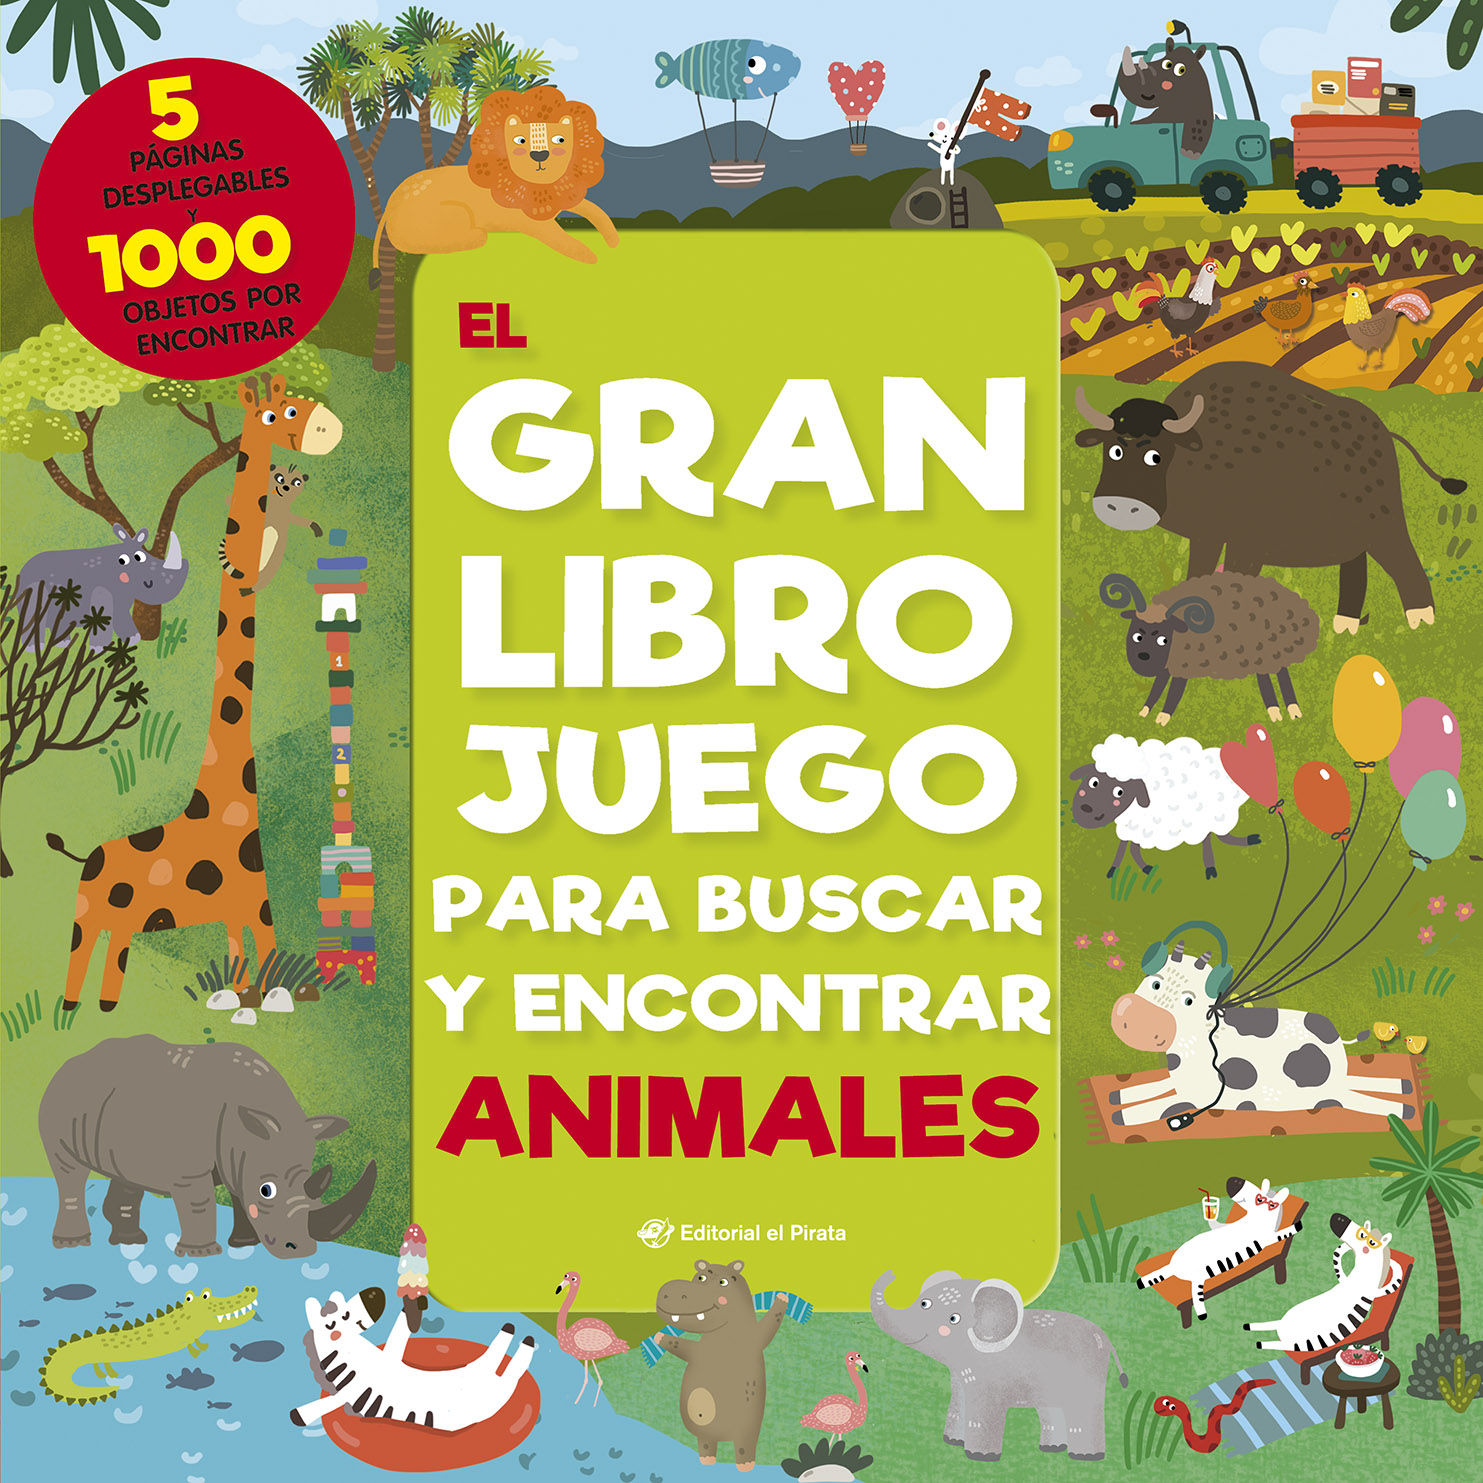 EL GRAN LIBRO JUEGO PARA BUSCAR Y ENCONTRAR ANIMALES. 1000 OBJETOS PARA BUSCAR Y 5 ENORMES PÁGINAS DESPLEGABLES